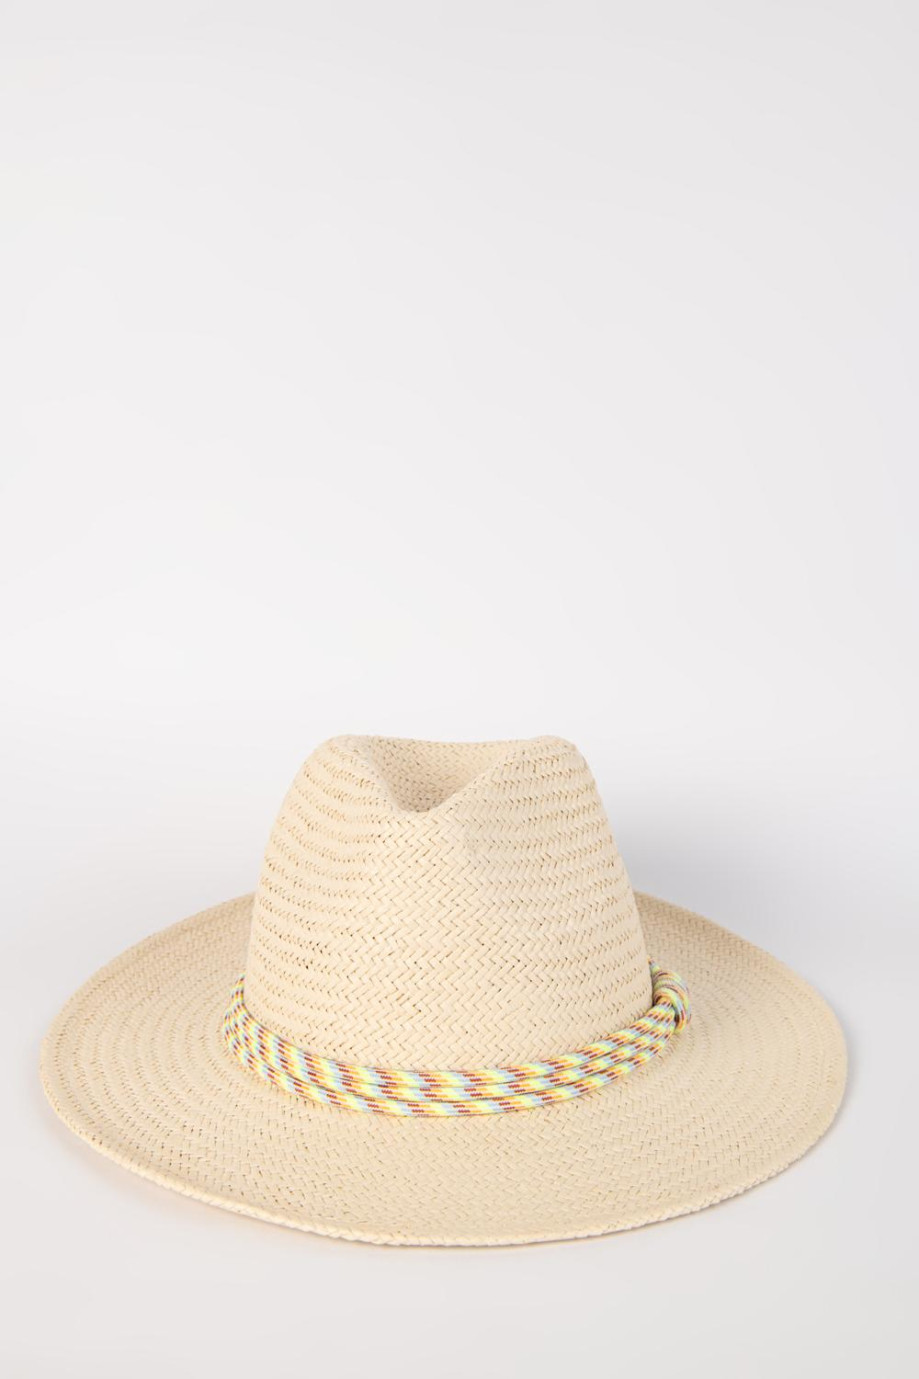 Sombrero crema claro fedora con cordón decorativo colorido